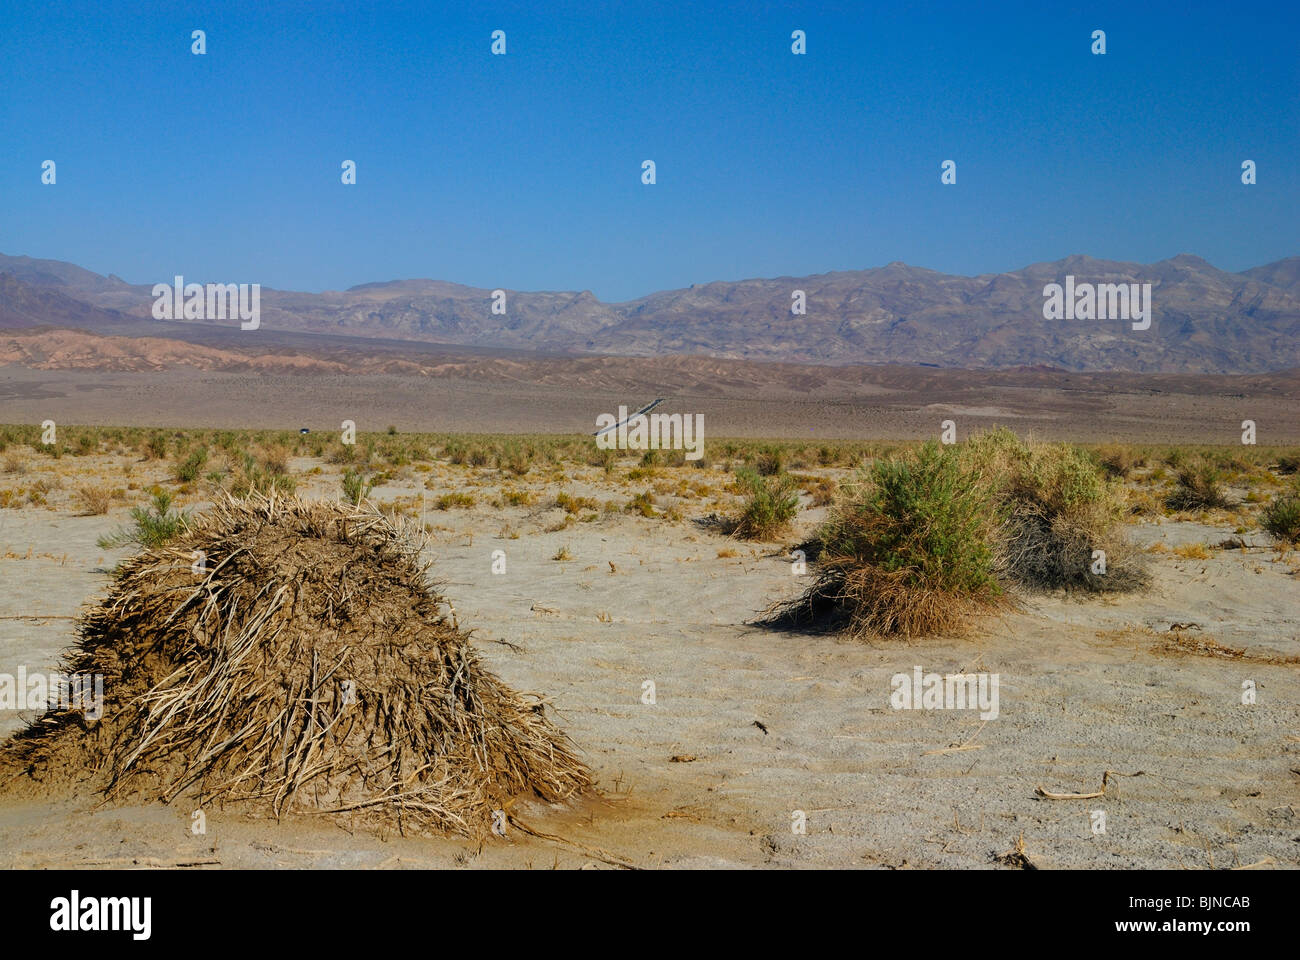 Scenic view of devil's cornfield in Death Valley, California state Stock Photo